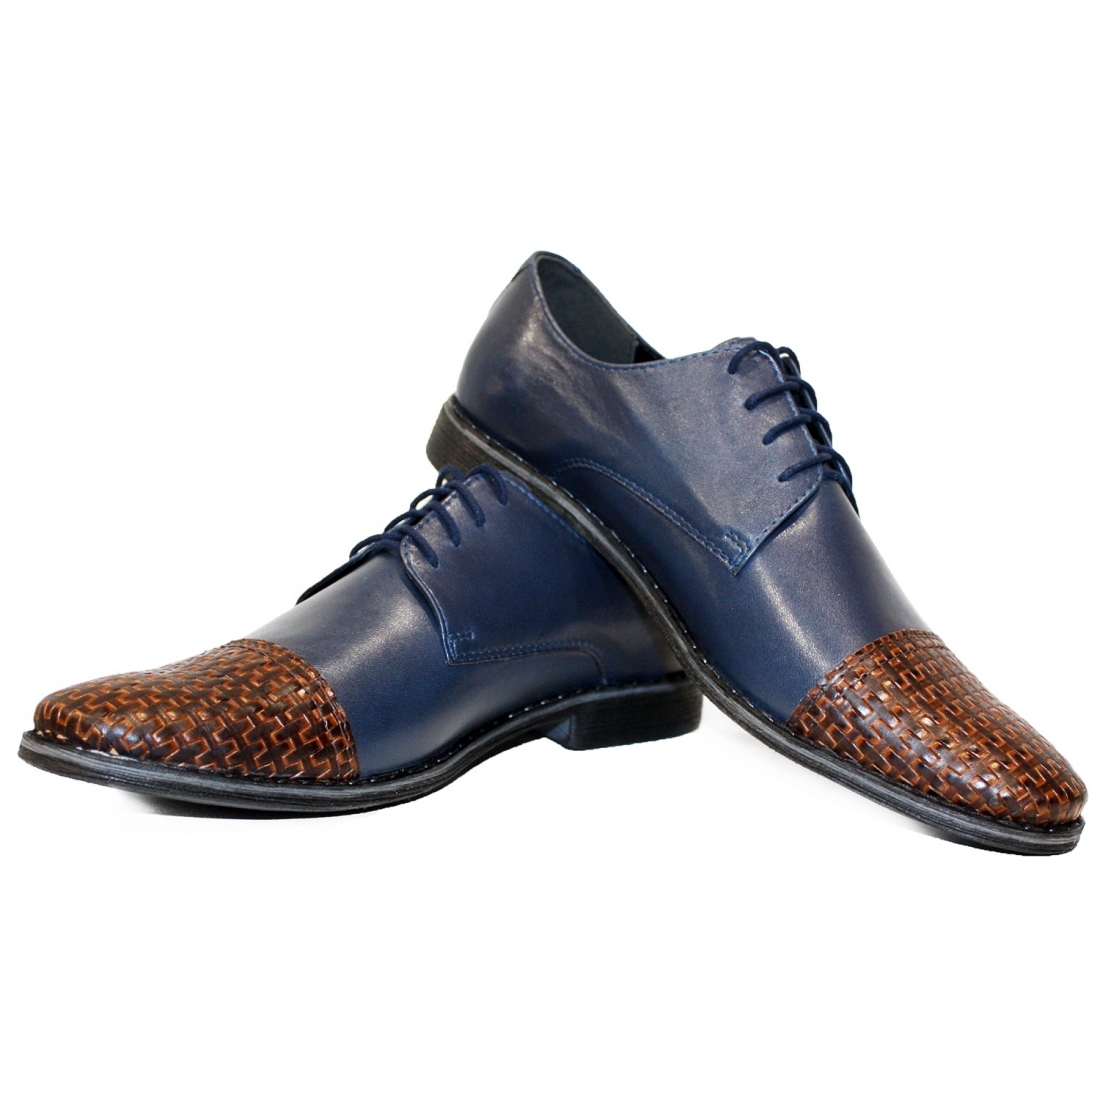 Modello Wottero - Scarpe Classiche - Handmade Colorful Italian Leather Shoes